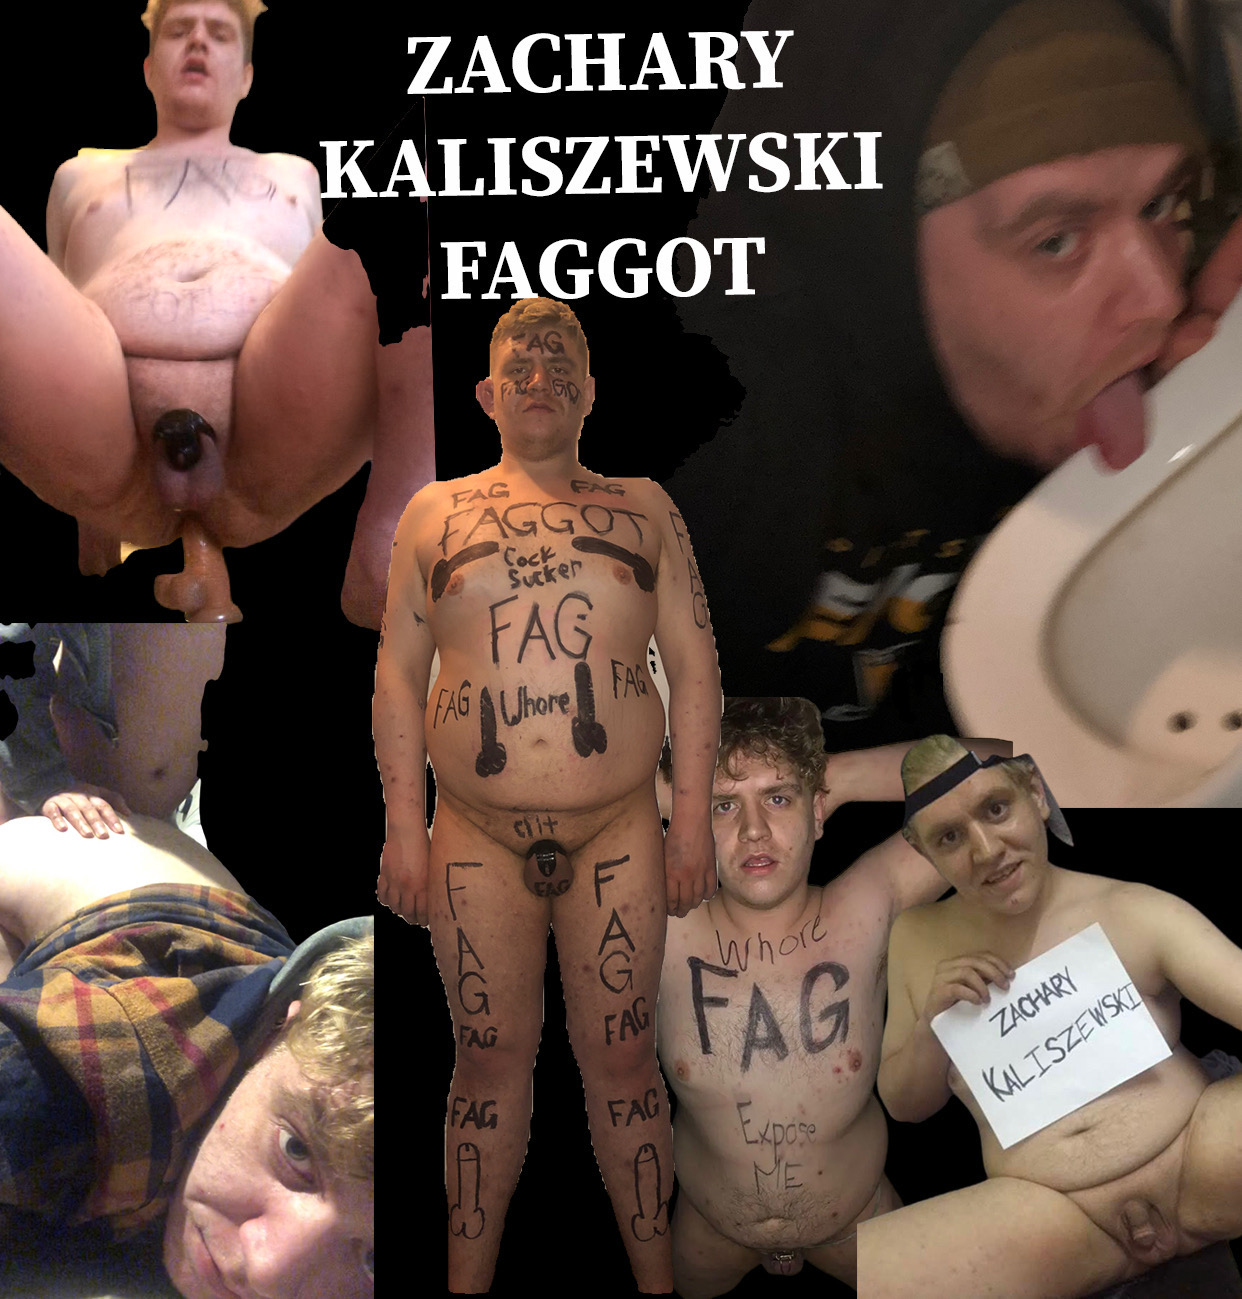 Zachary kaliszewski